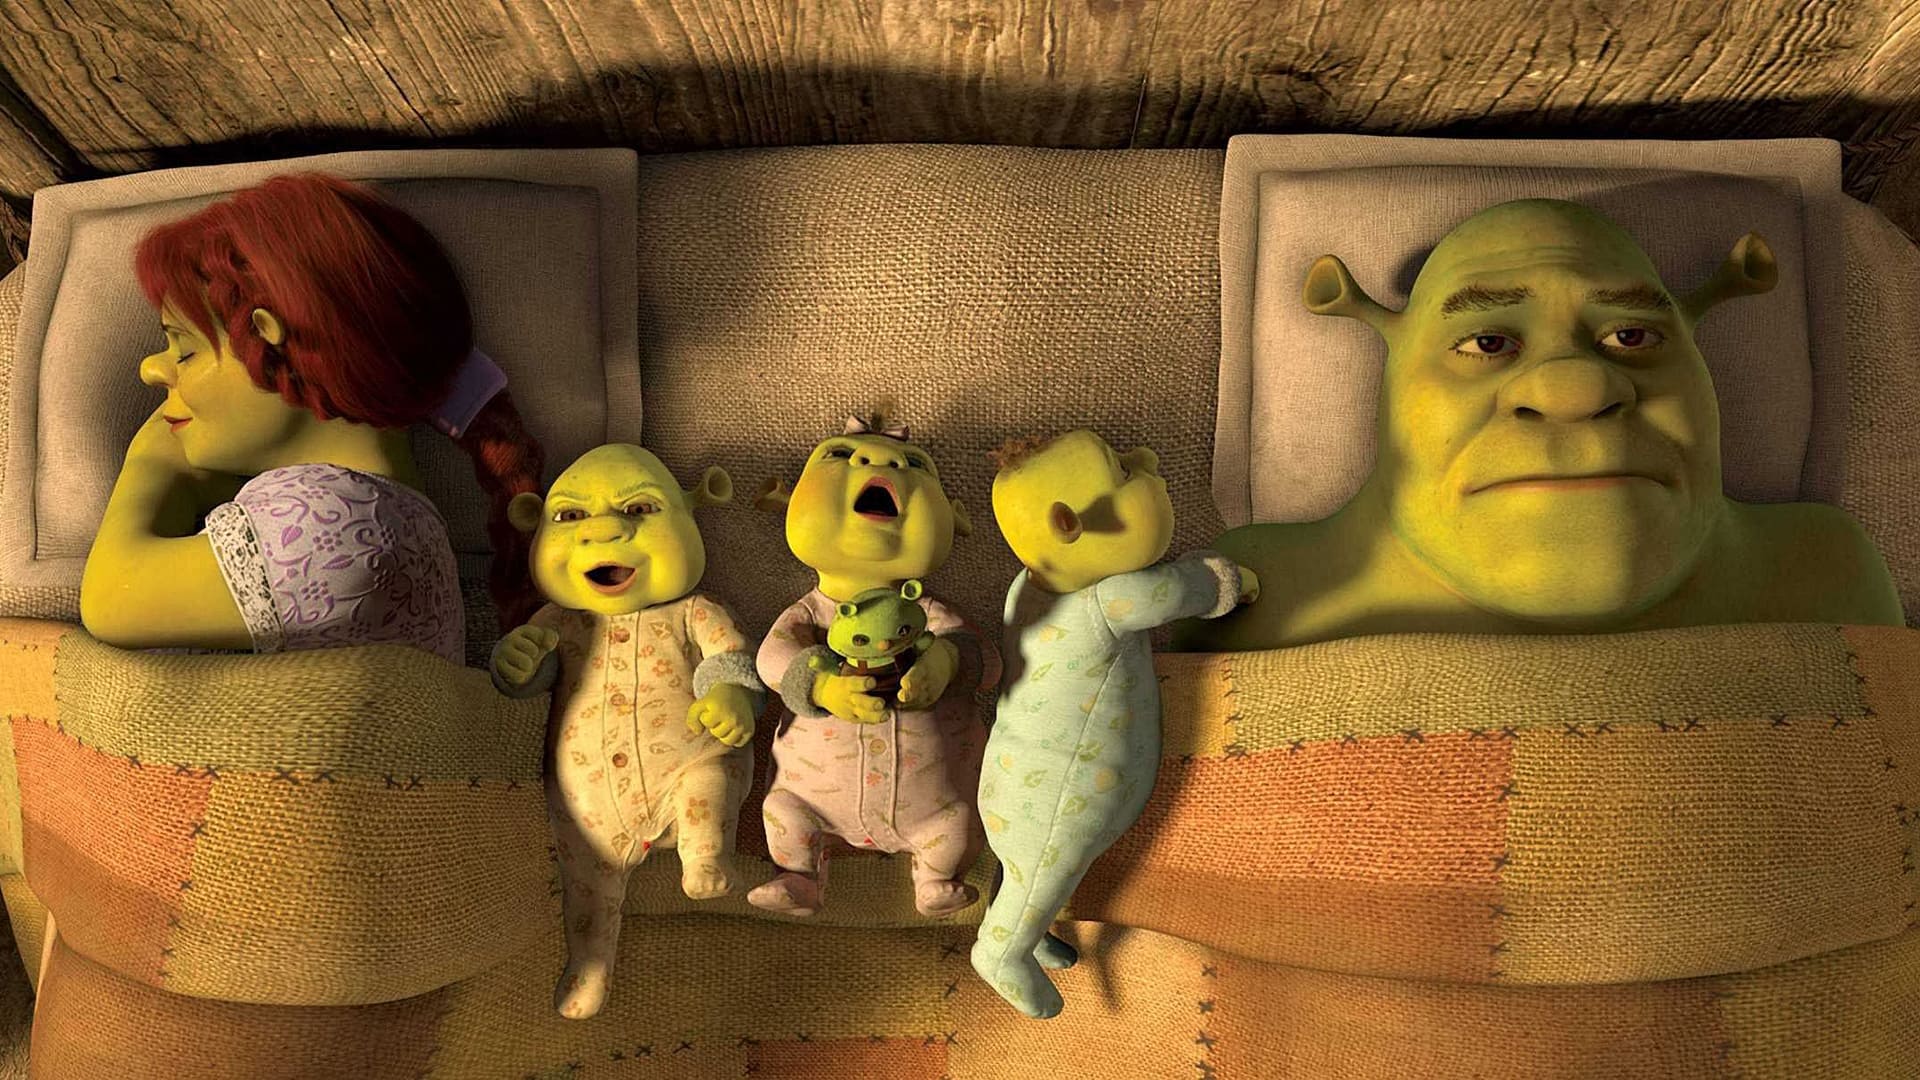 Shrek 4: cuộc phiêu lưu cuối cùng - Shrek forever after